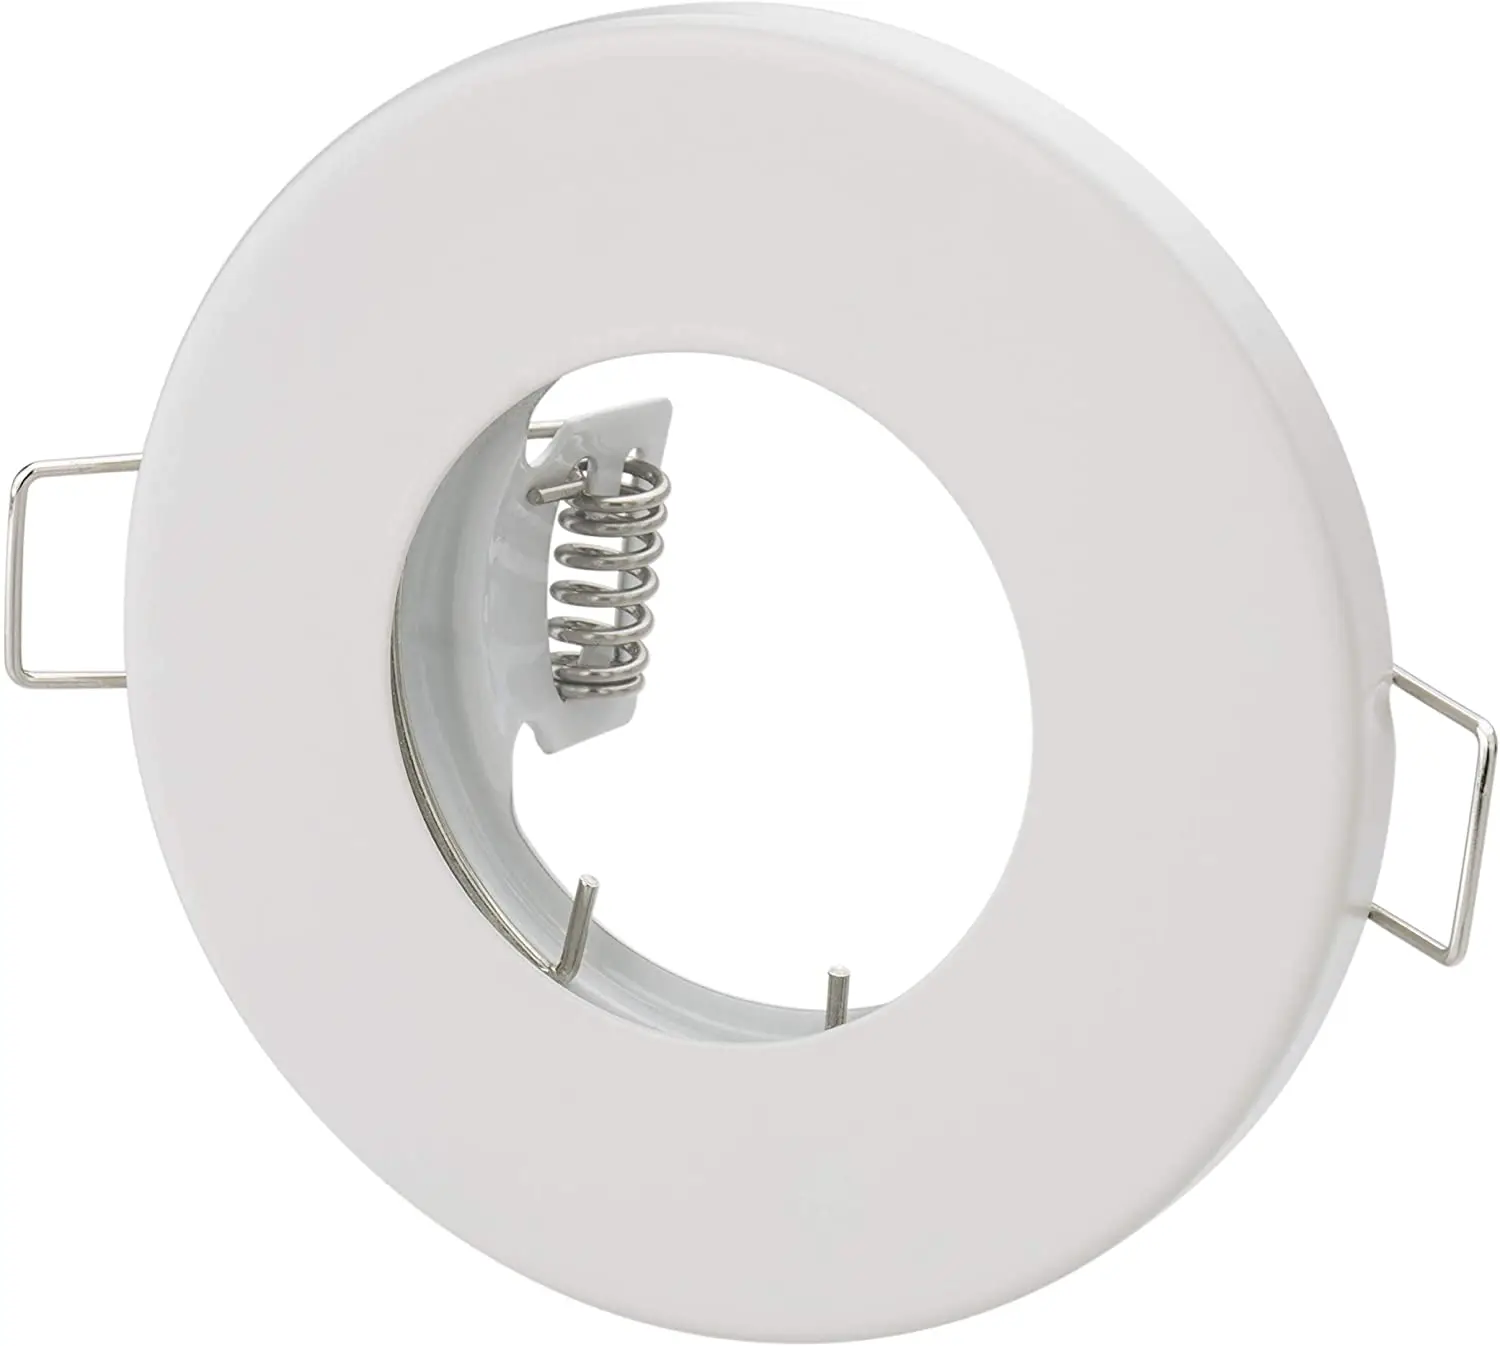 LED Line® MR16 Waterproof Ceiling Downlight IP44 Bathroom Recessed Spotlight 